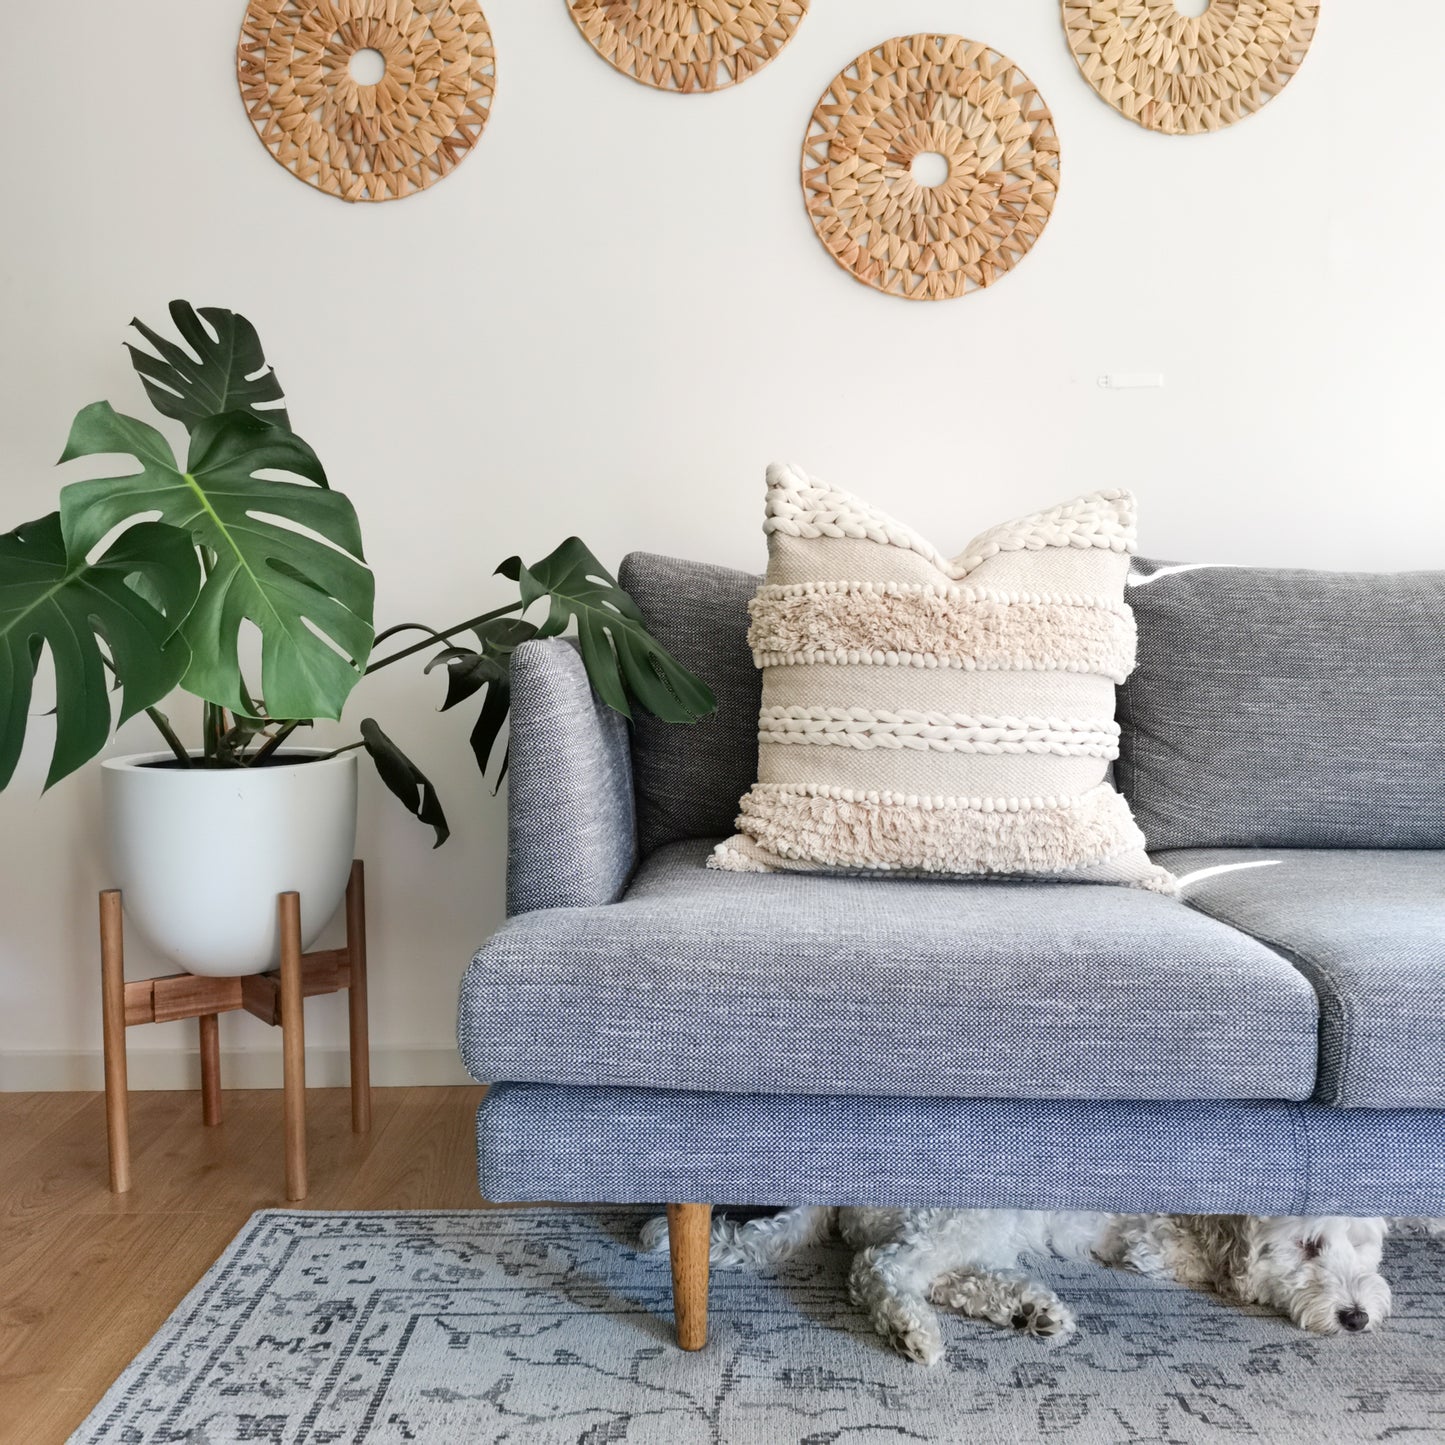 Boho living room with minimalist cushion, plant stand, and boho basket wall